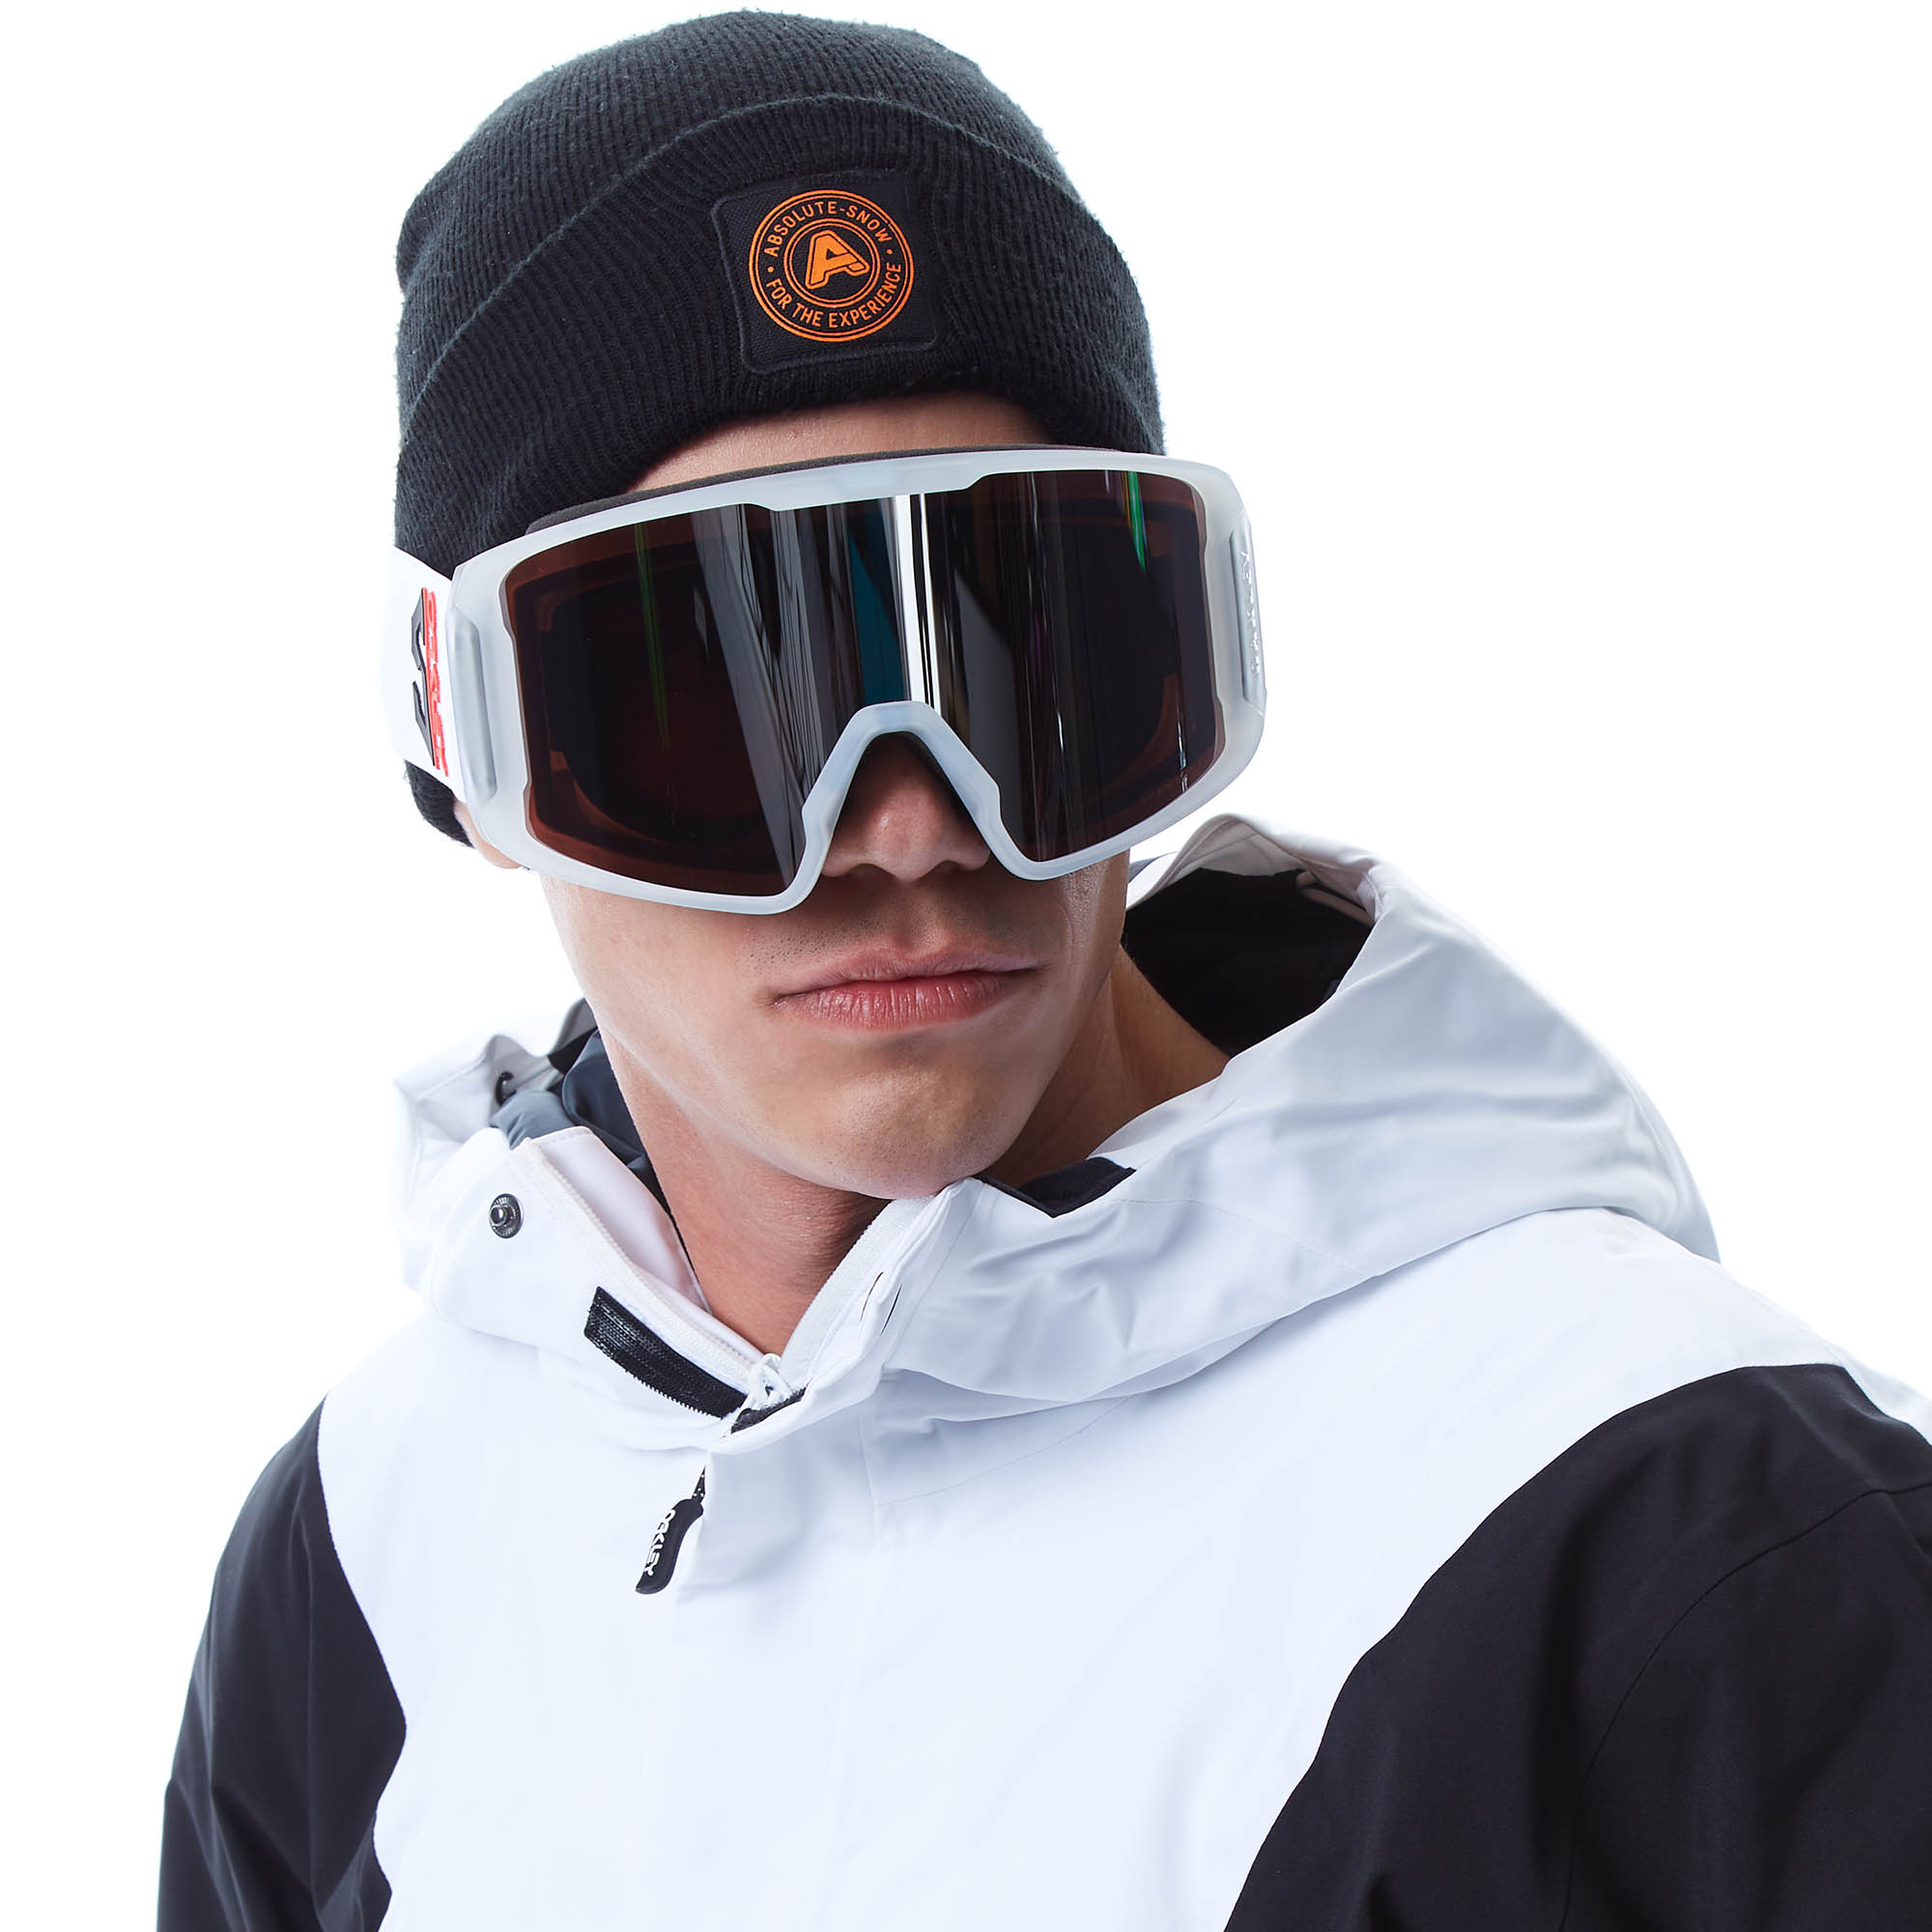 Oakley Line Miner L Snowboard/Ski Goggles